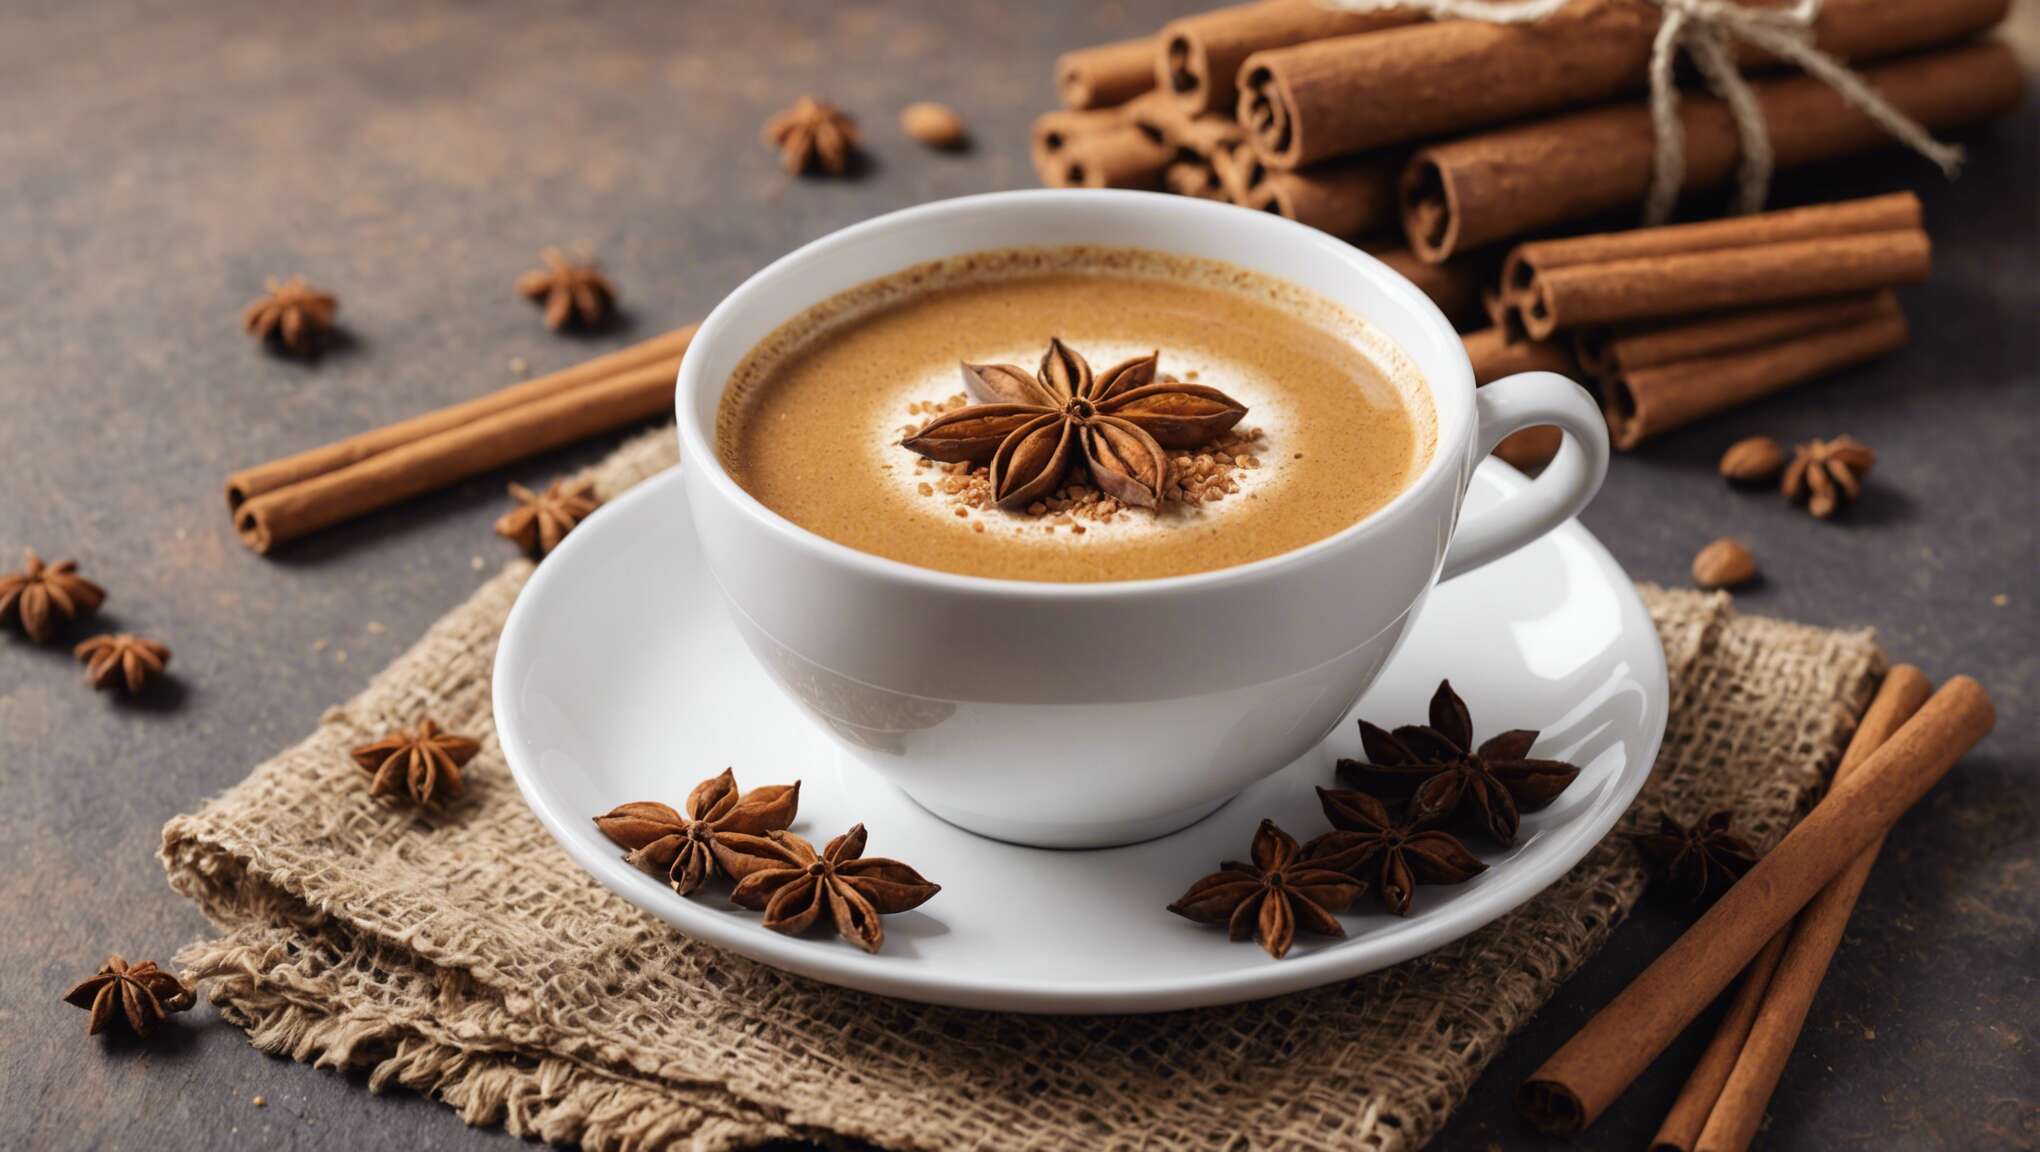 La consommation de café épicé : recommandations et modération